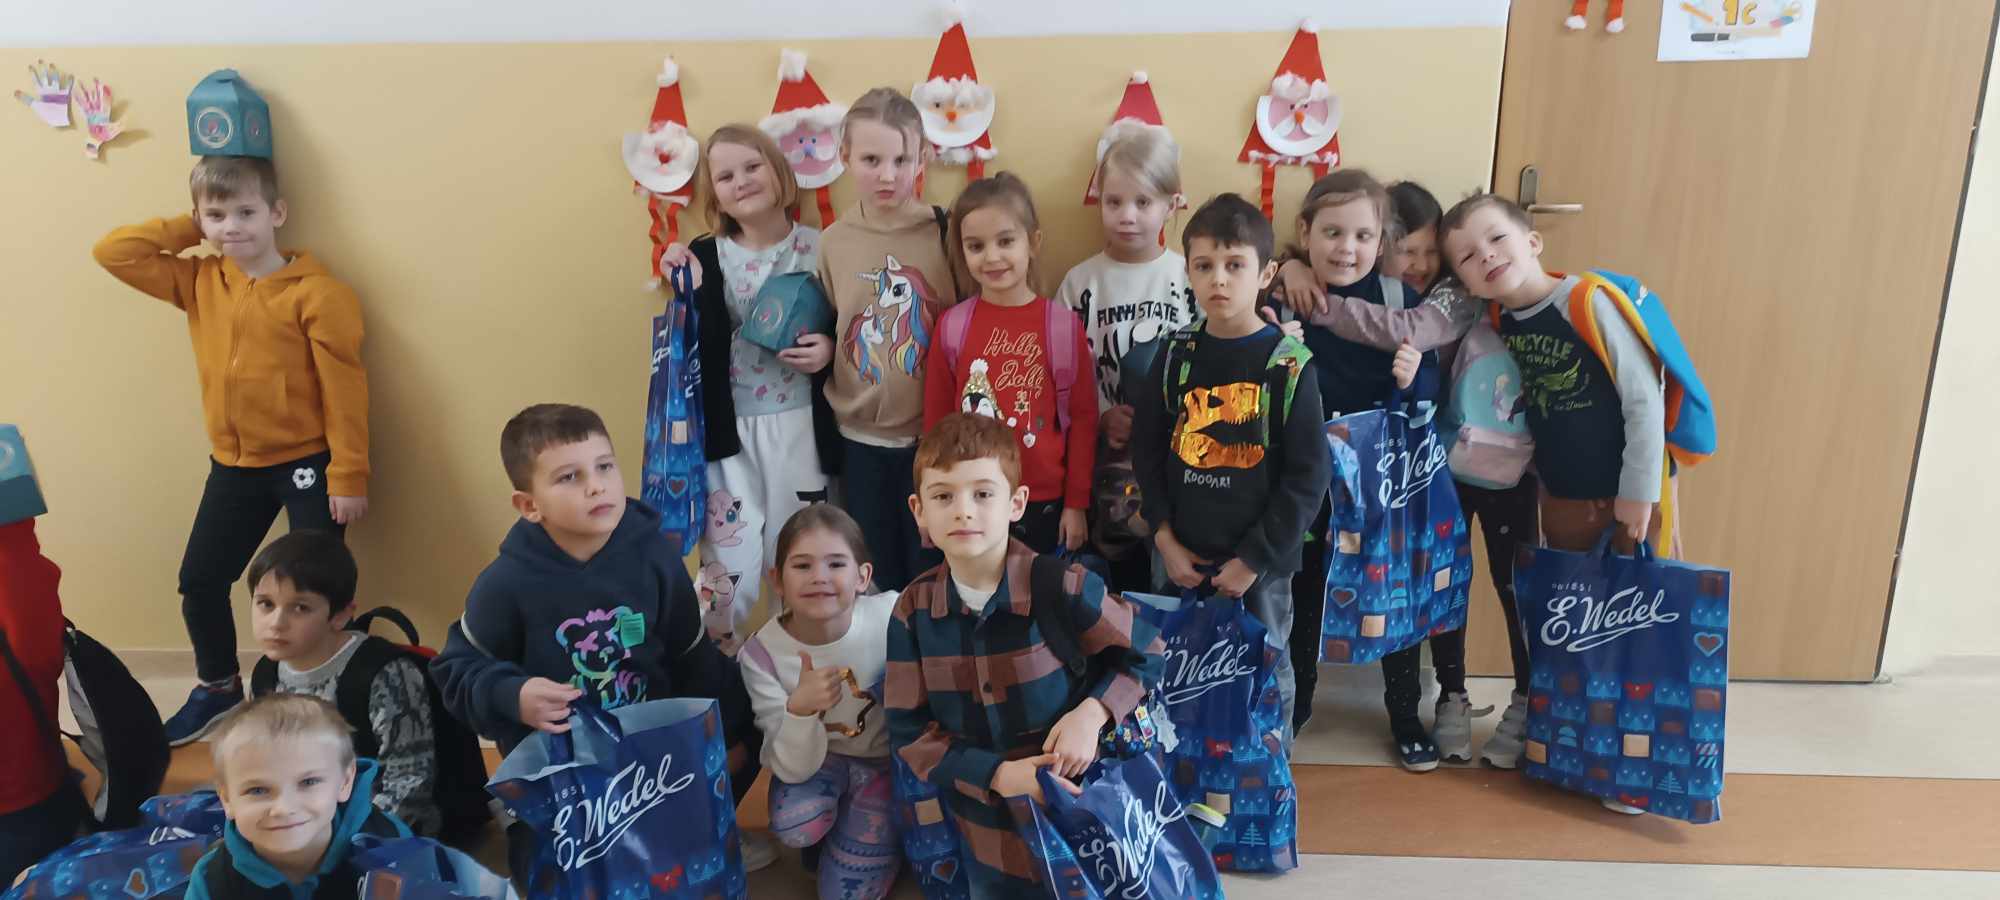 Sala szkolna, uczniowie ustawieni w trzech rzędach trzymający papierowe Mikołaje i niebieskie torby z napisem Wedel.